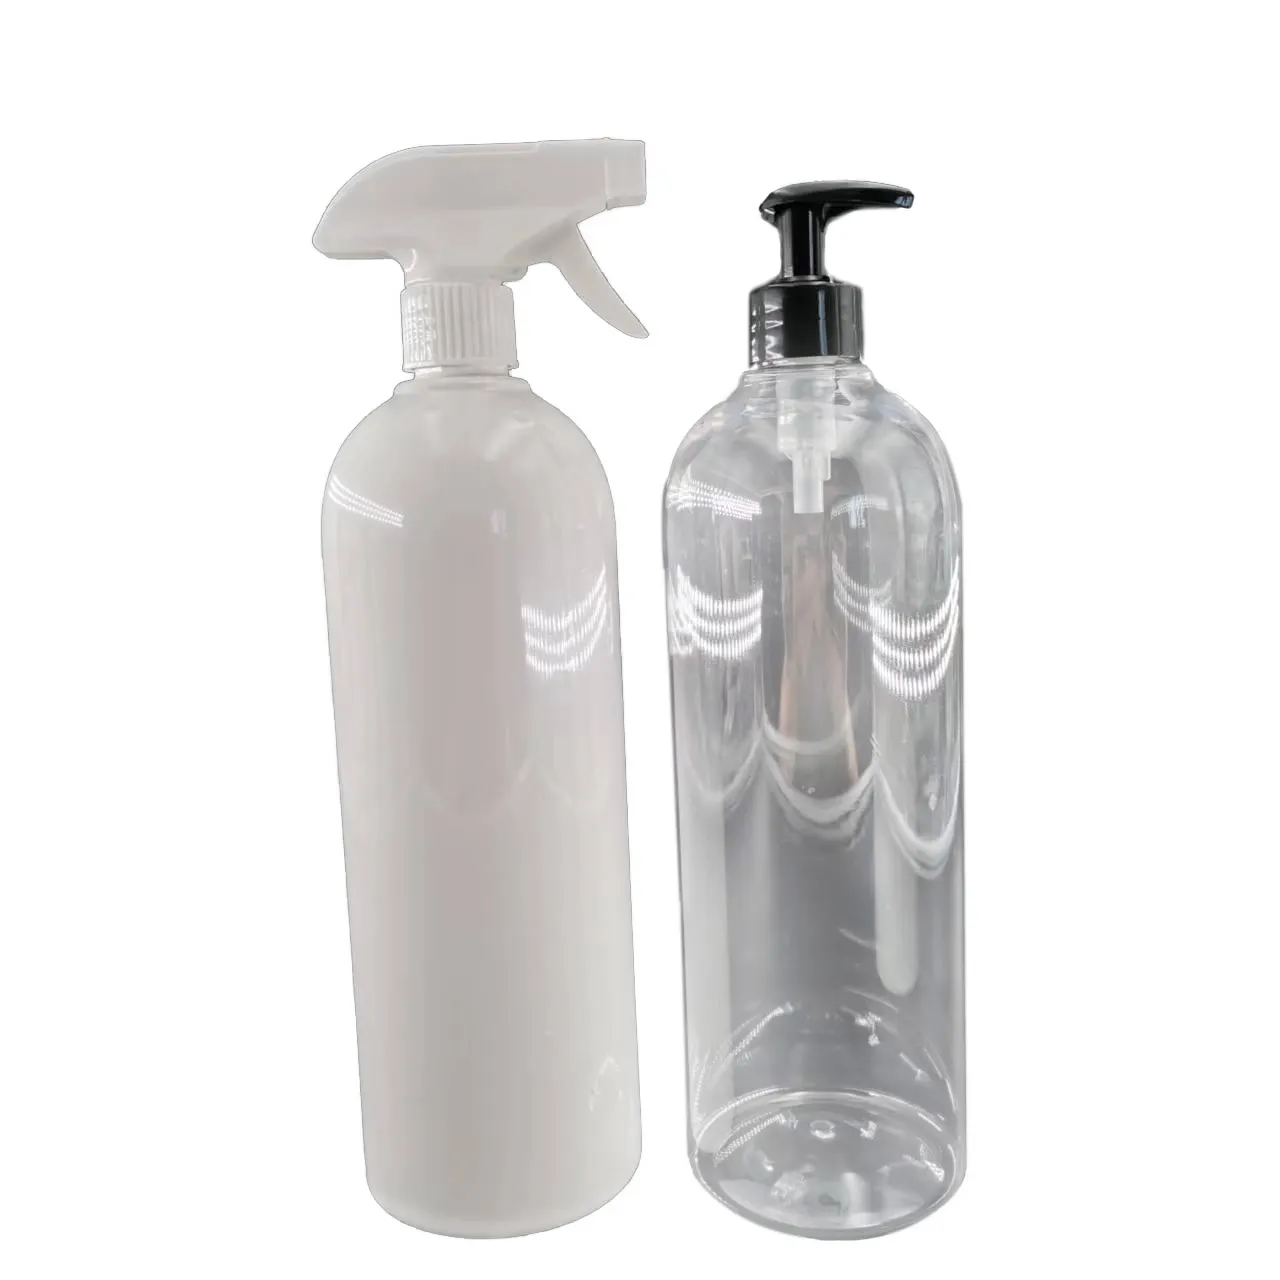 Cosmo garrafa de bomba transparente, garrafa de plástico para animais de estimação, 1000ml 1l, impressão de tela, pulverizador, cuidados pessoal, garrafa de sabão líquido de plástico